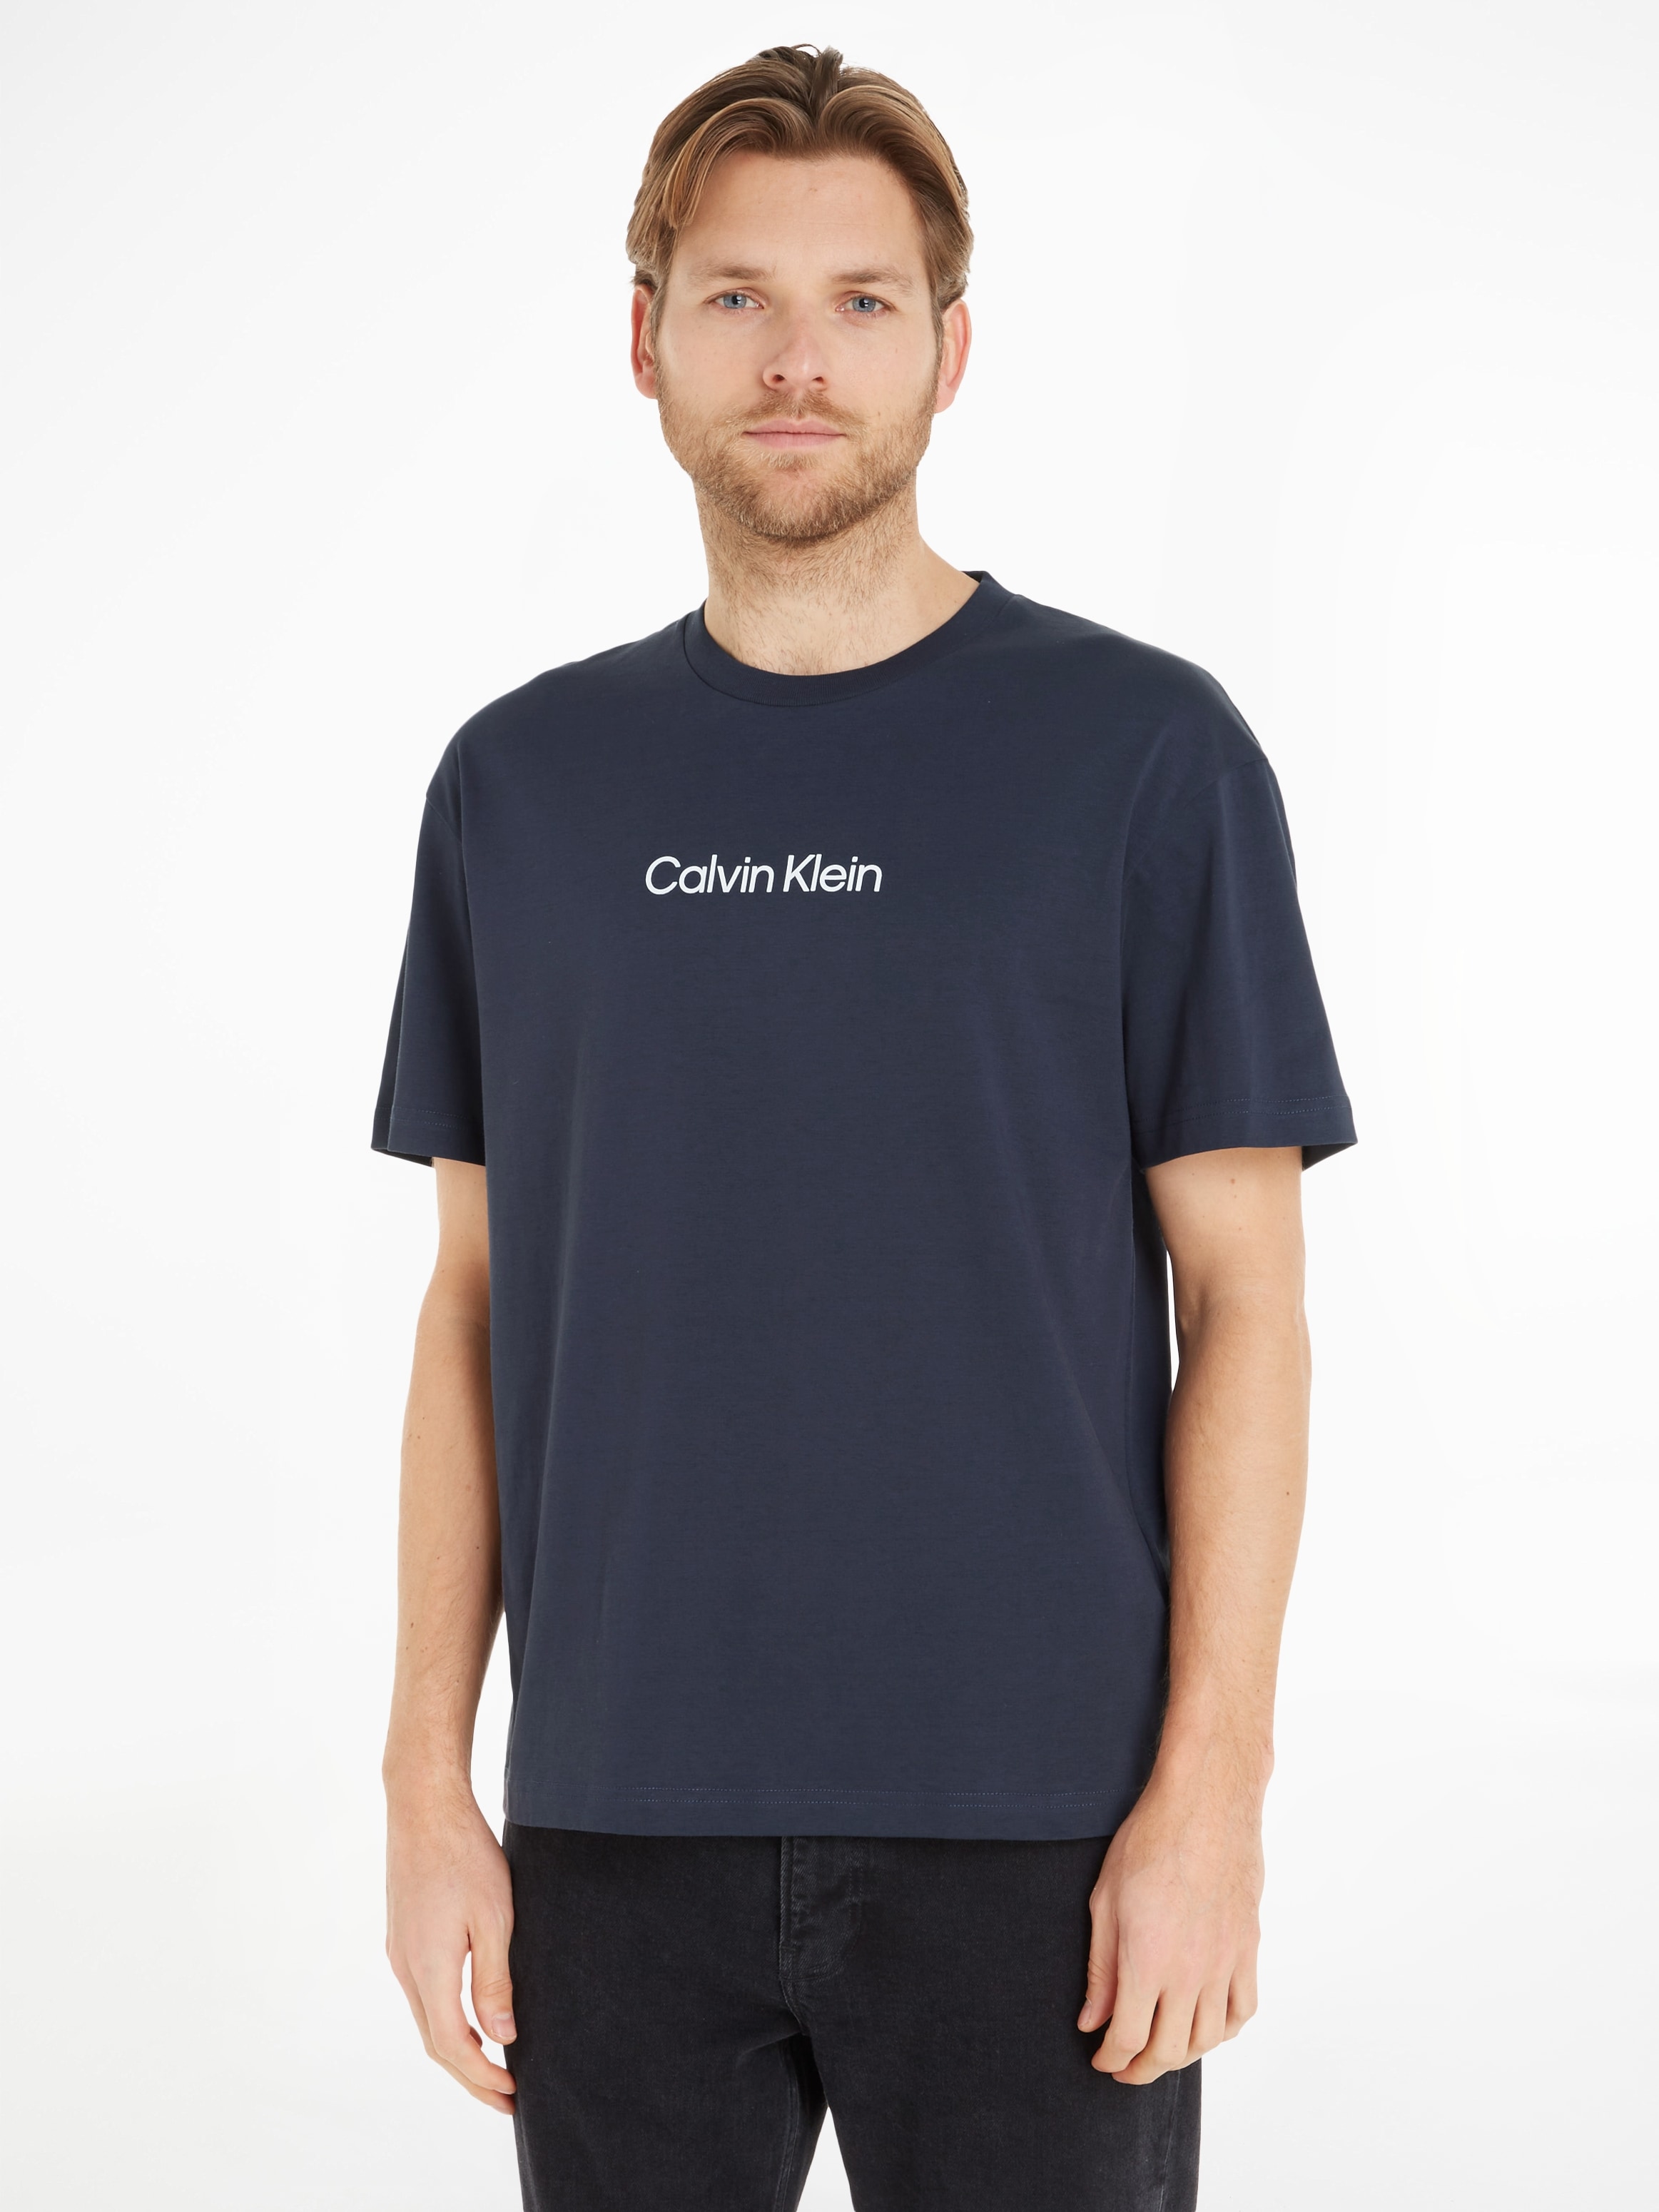 Fühlt sich gut auf der Haut an Calvin Klein T-Shirt mit LOGO »HERO kaufen T-SHIRT«, OTTO COMFORT bei Markenlabel online aufgedrucktem